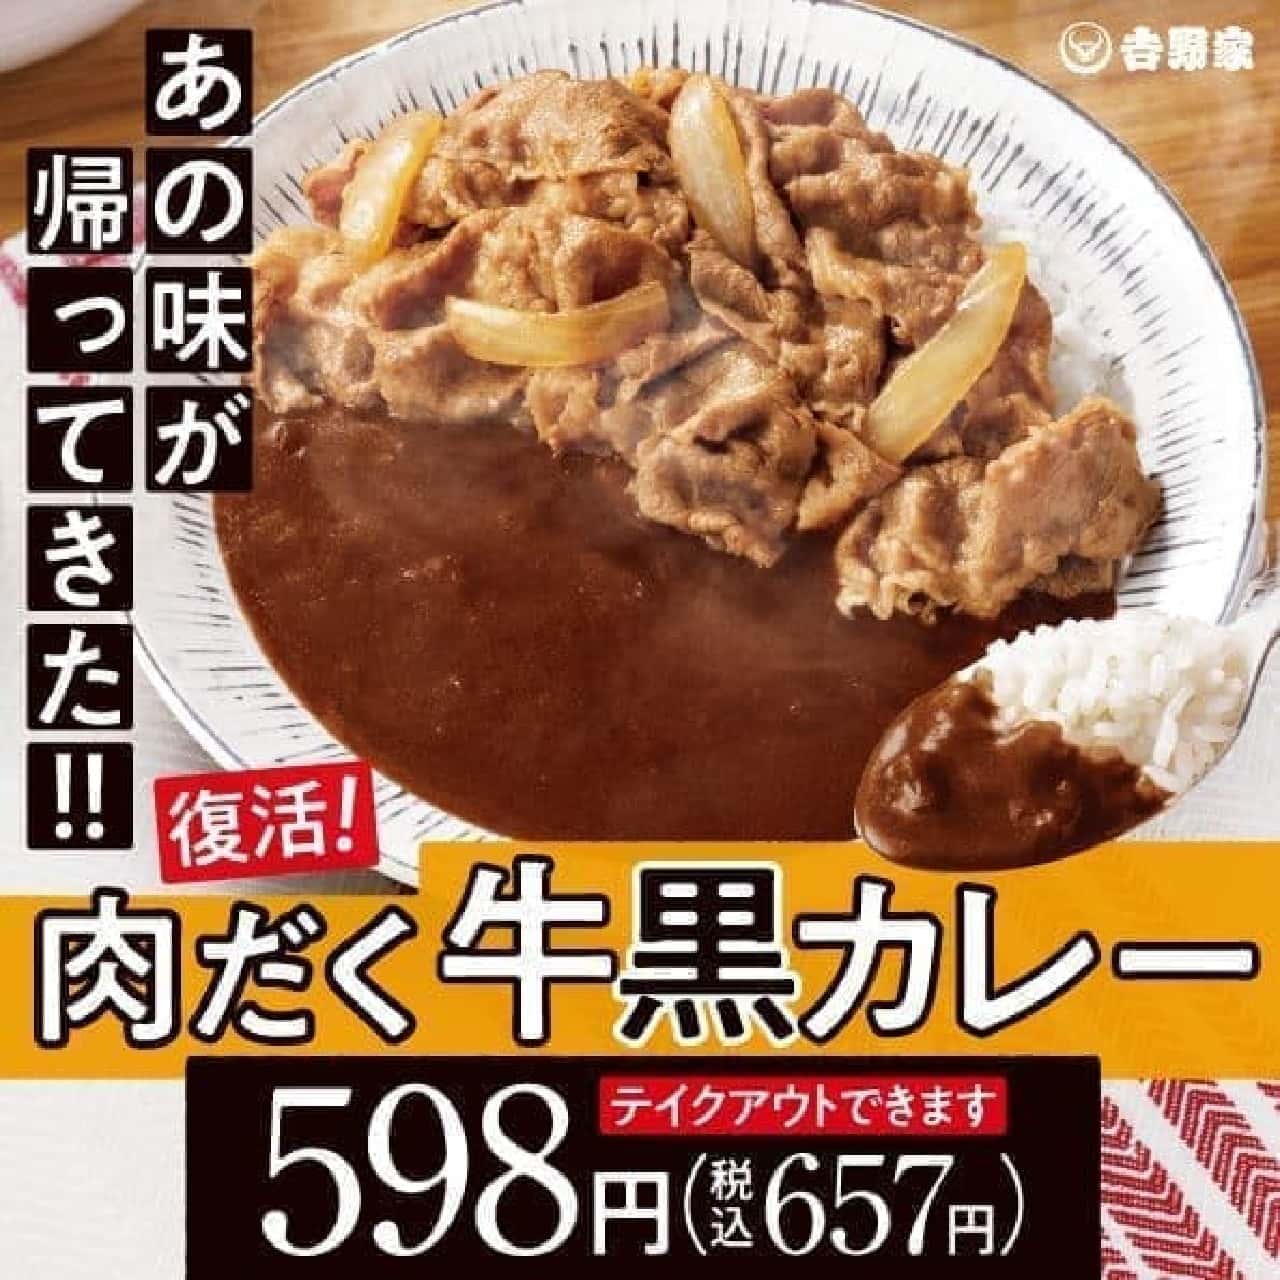 Yoshinoya "Meaty Beef Black Curry"